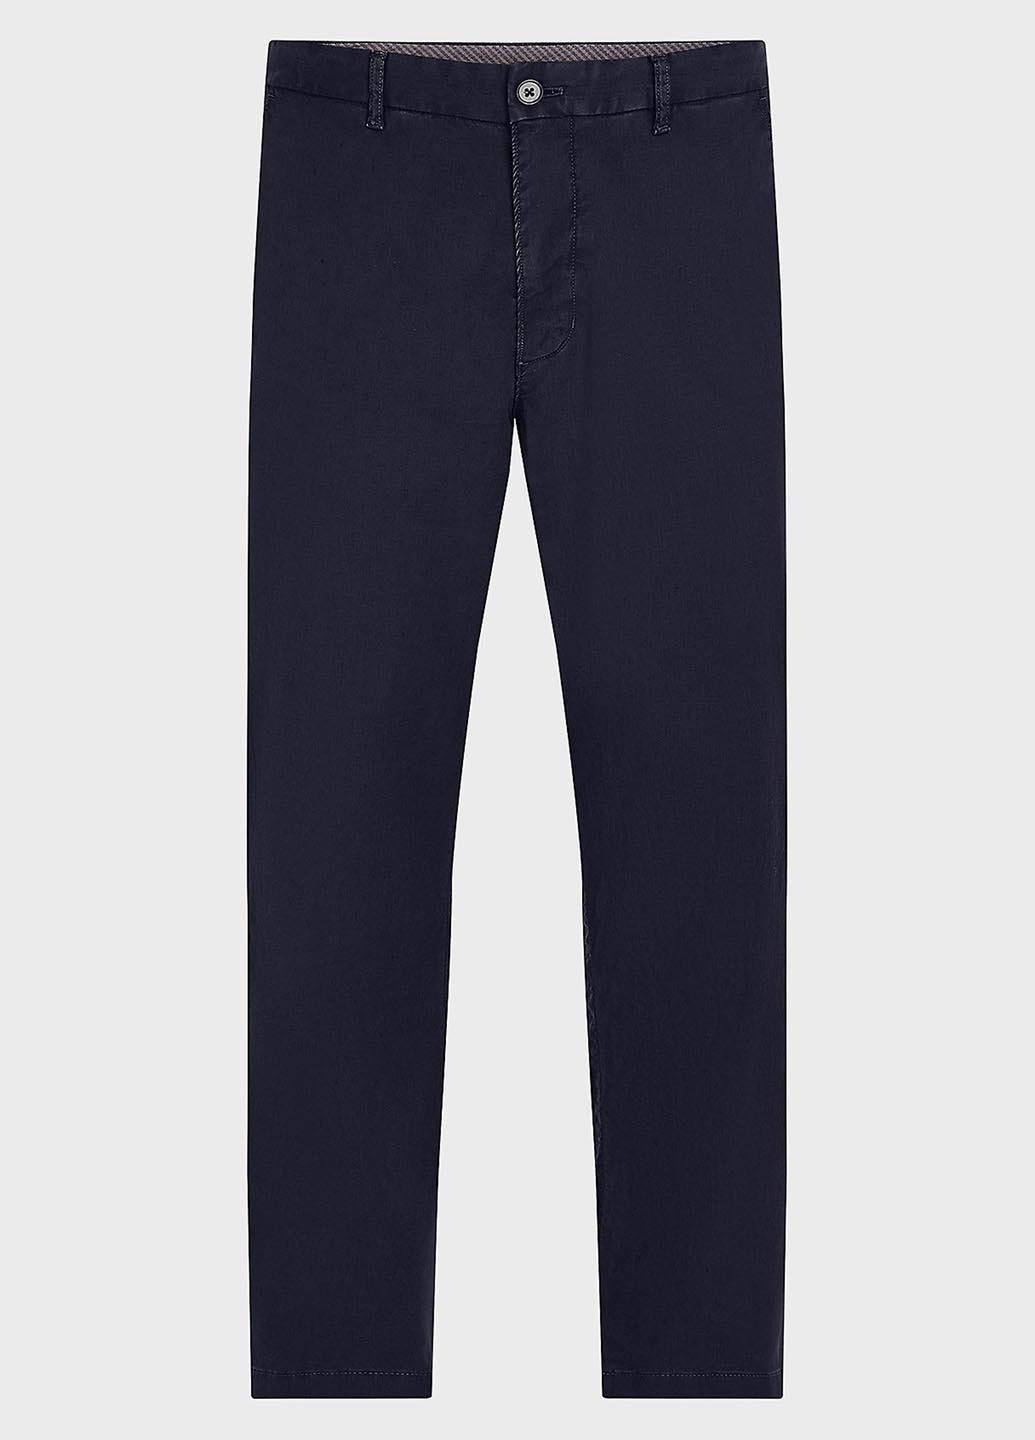 Темно-синие классические летние классические, прямые, чиносы брюки Tommy Hilfiger